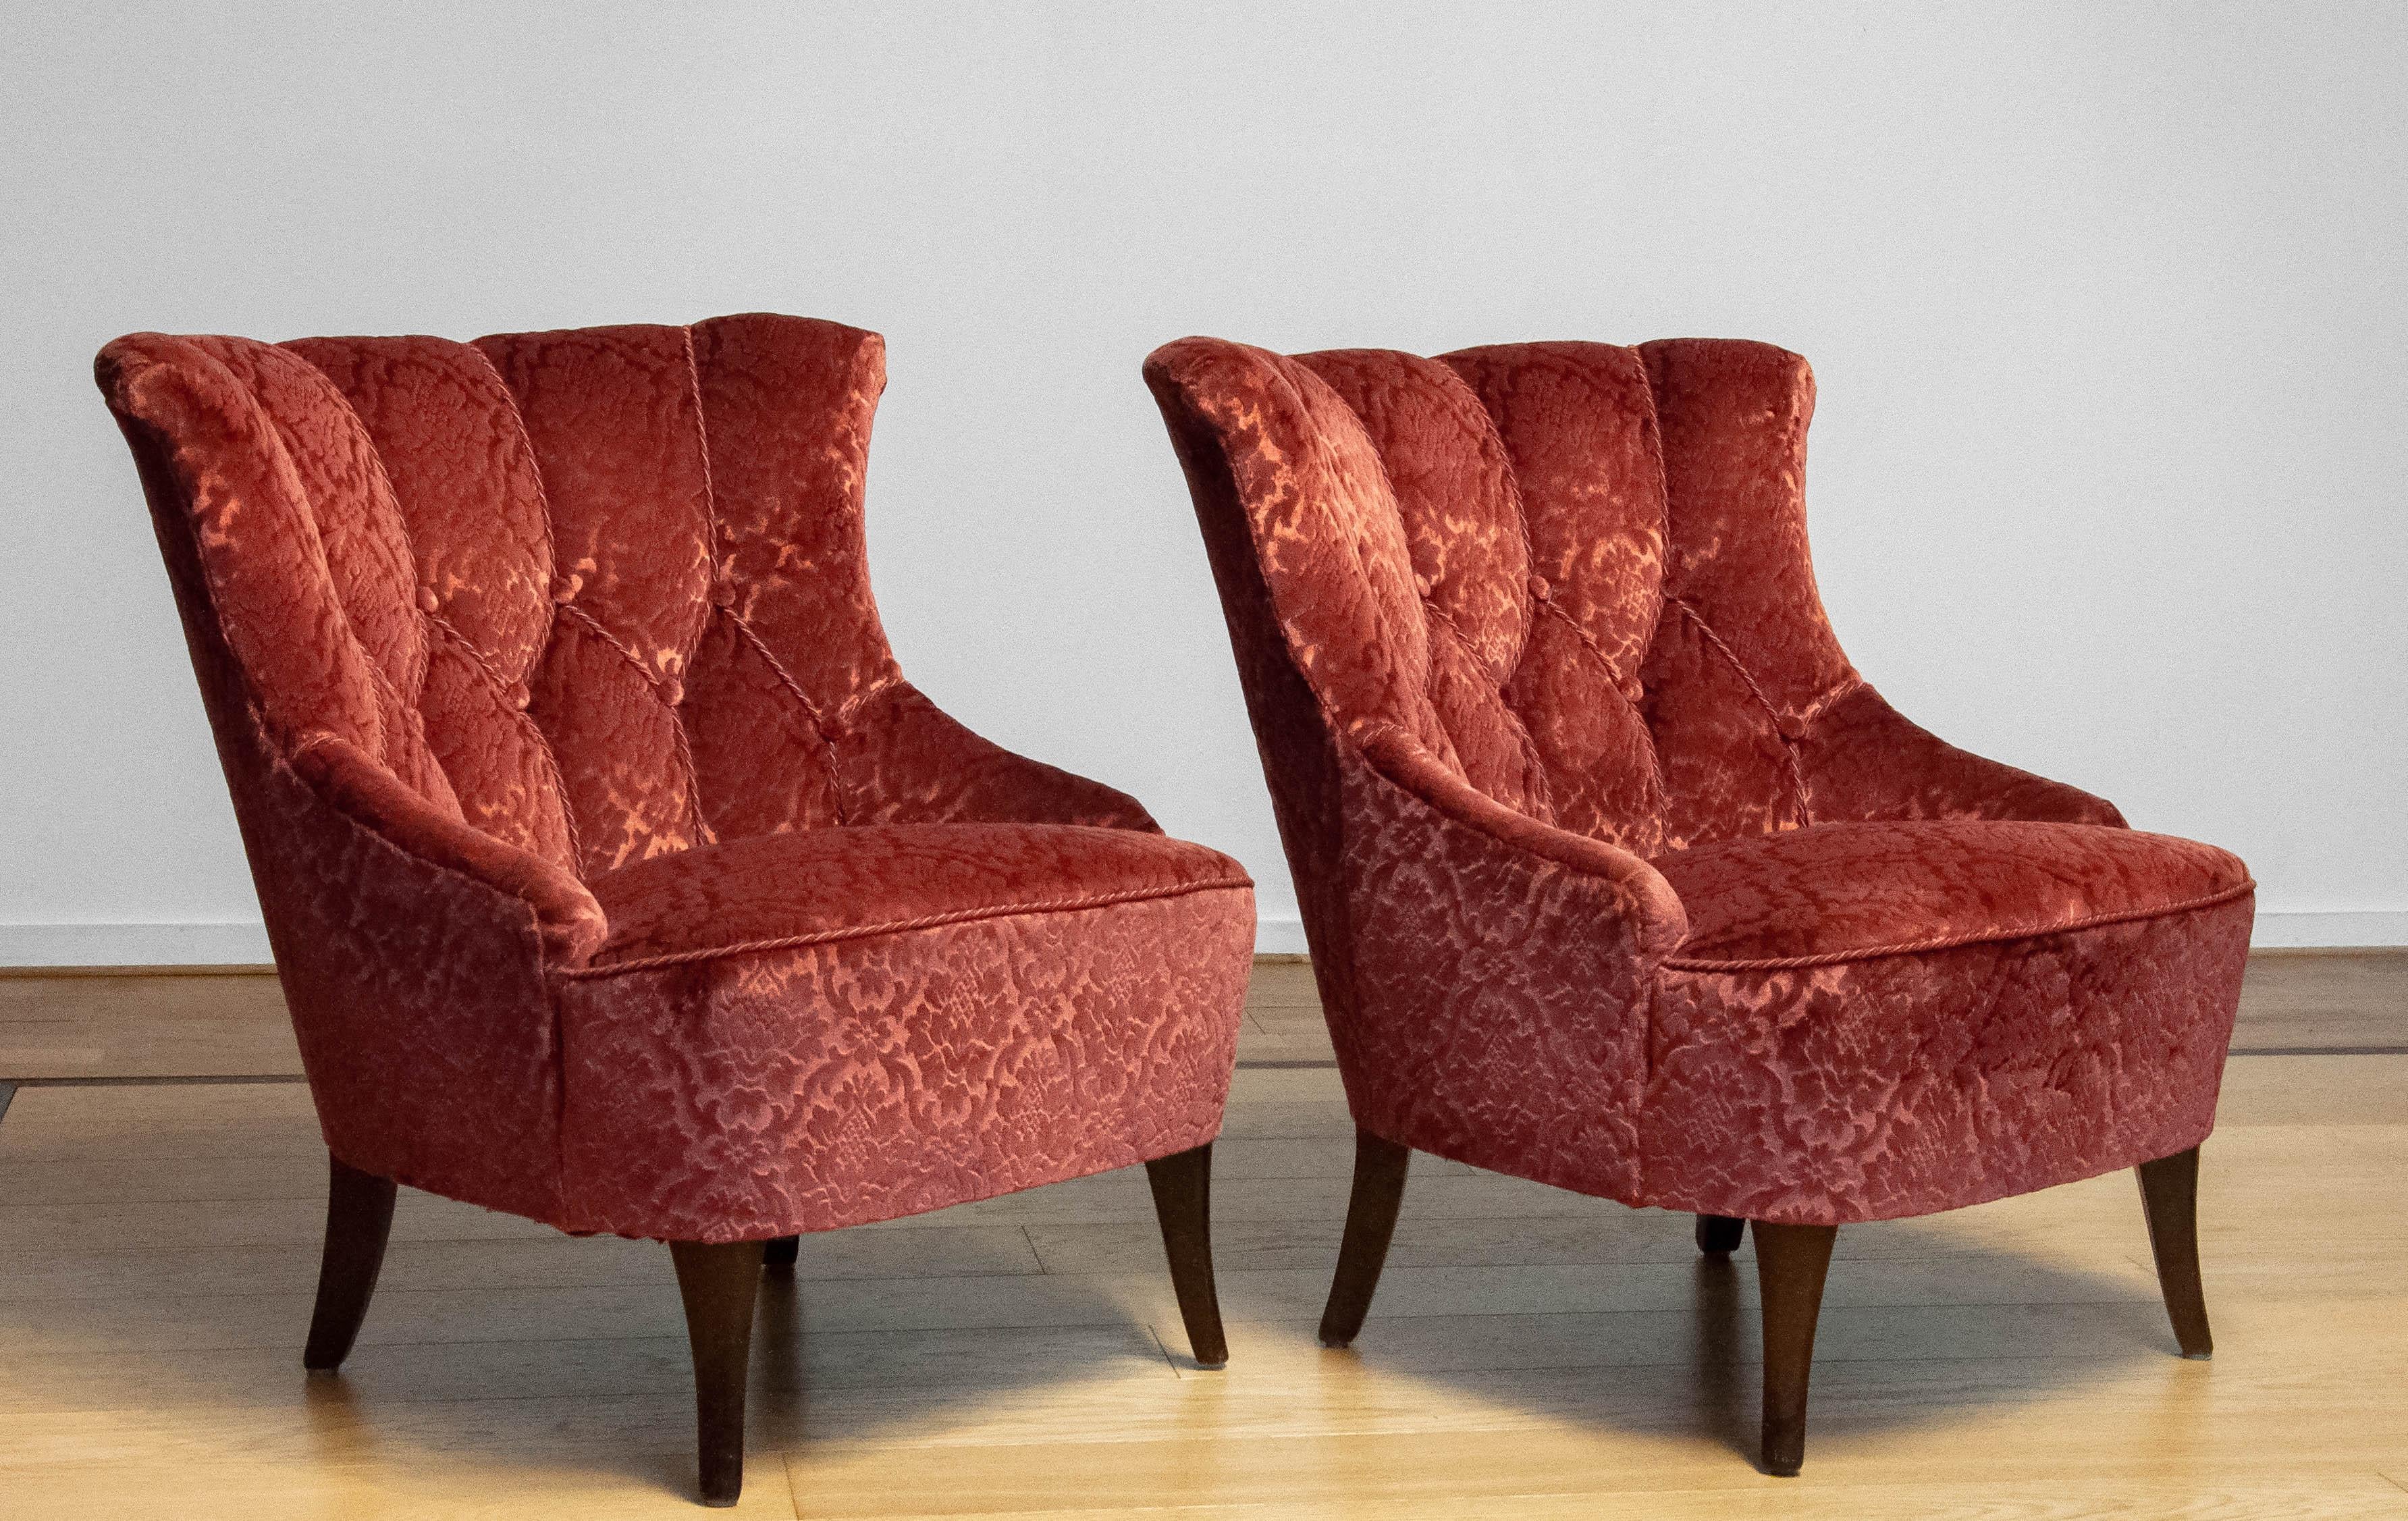 Magnifiques chaises Napoléon III (scandinaves).
Les chaises ont toutes deux été retapissées avec du velours jacquard brique ton sur ton dans les années 1970. Les sangles et les ressorts sont en bon état.
Dans l'ensemble, les chaises s'assoient et se